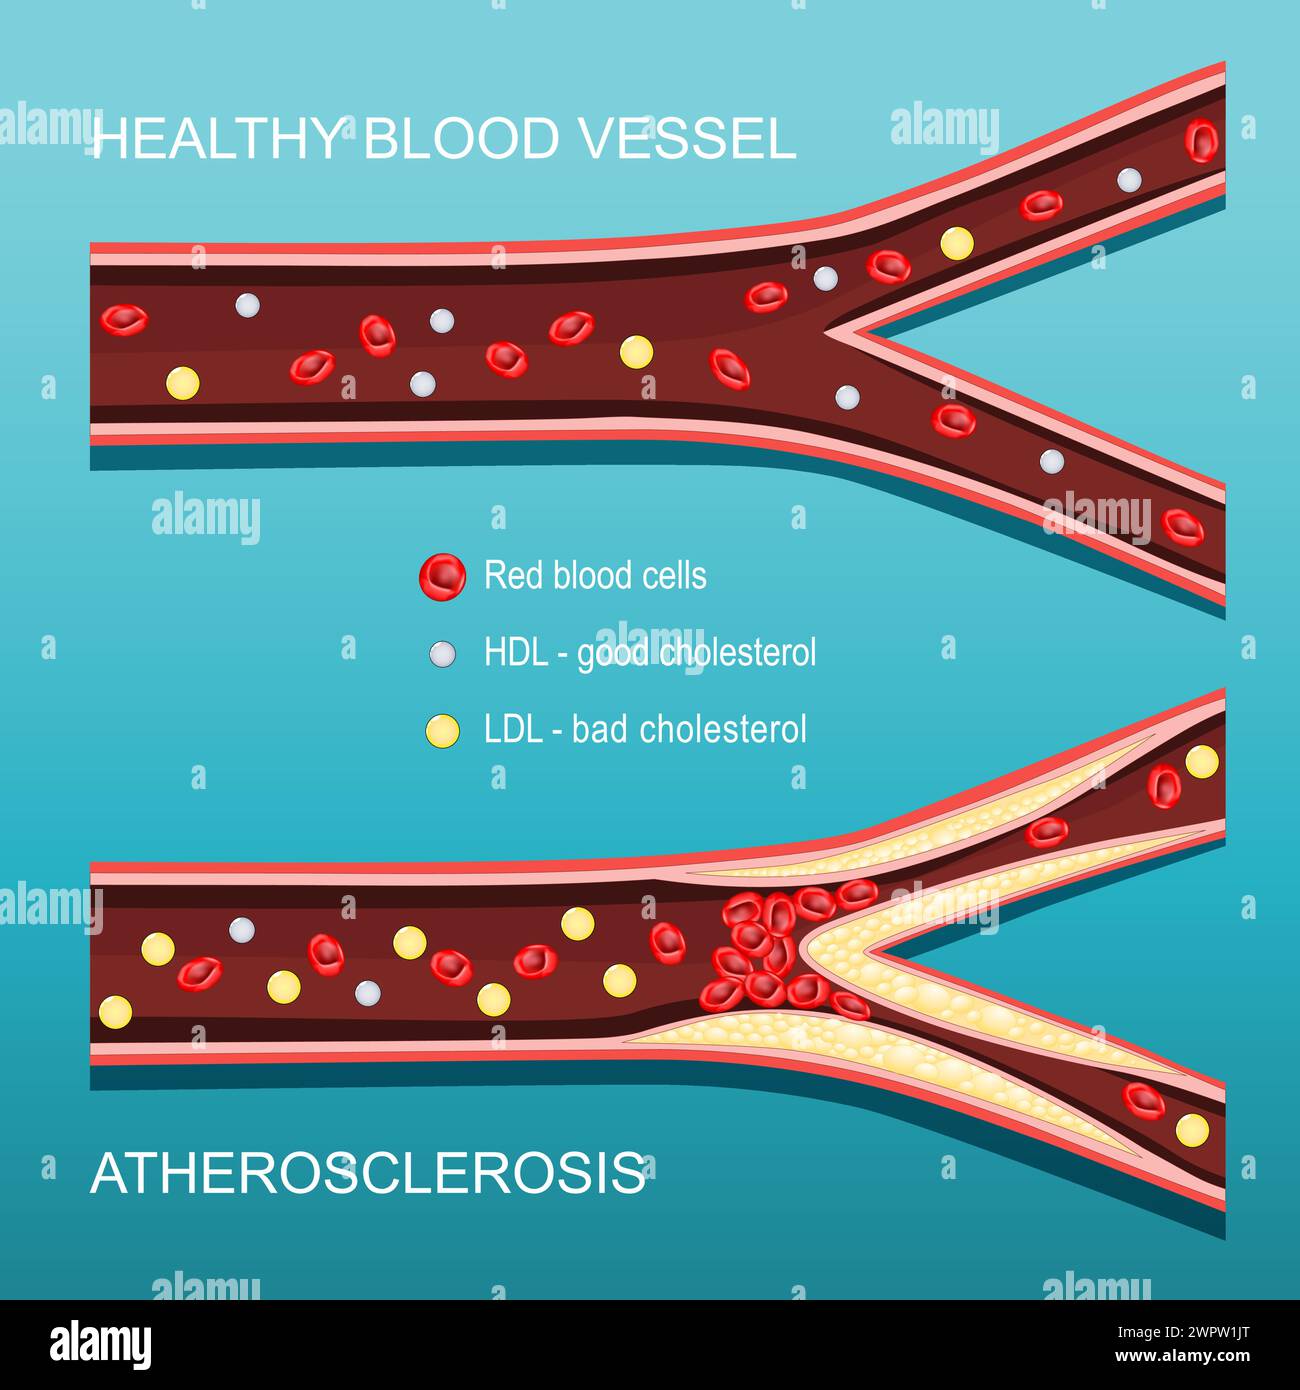 Atherosklerose. Cholesterinspiegel. Querschnitt einer Arterie mit roten Blutkörperchen, HDL, LDL und atheromatösen Plaques. Gutes und schlechtes Cholesterin. Vect Stock Vektor